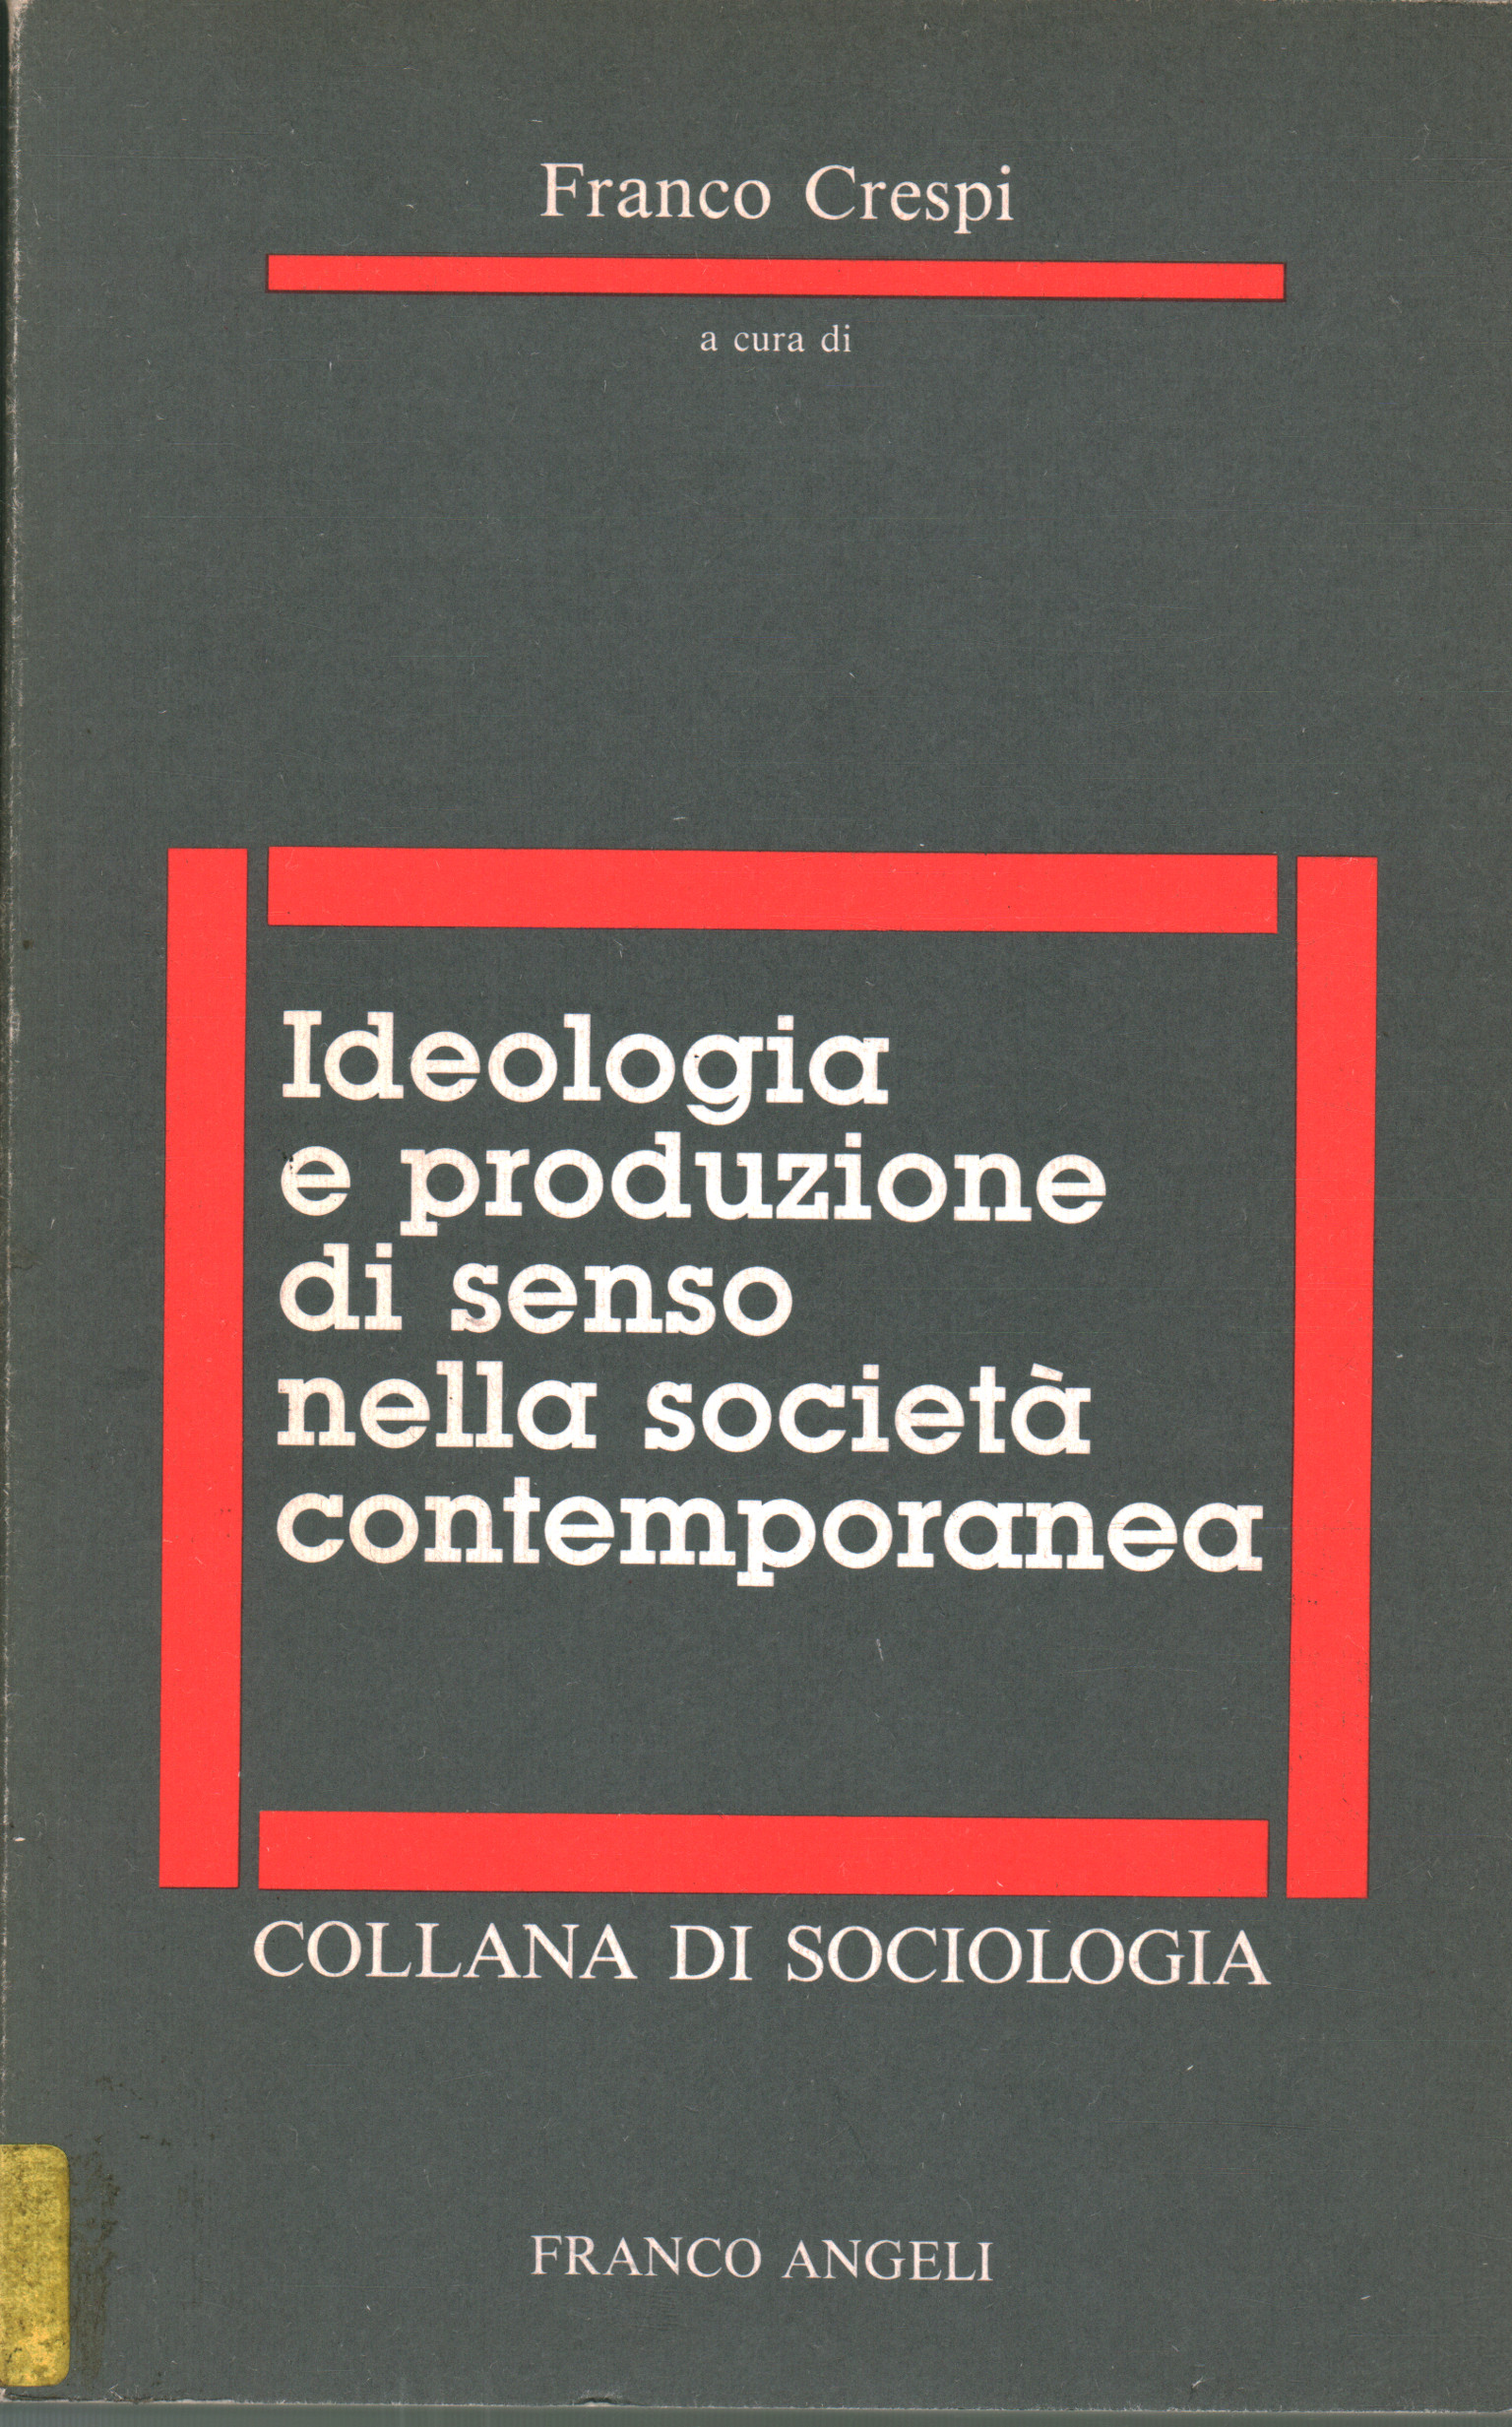 Ideologie und Sinnproduktion in der Gesellschaft mit Franco Crespi